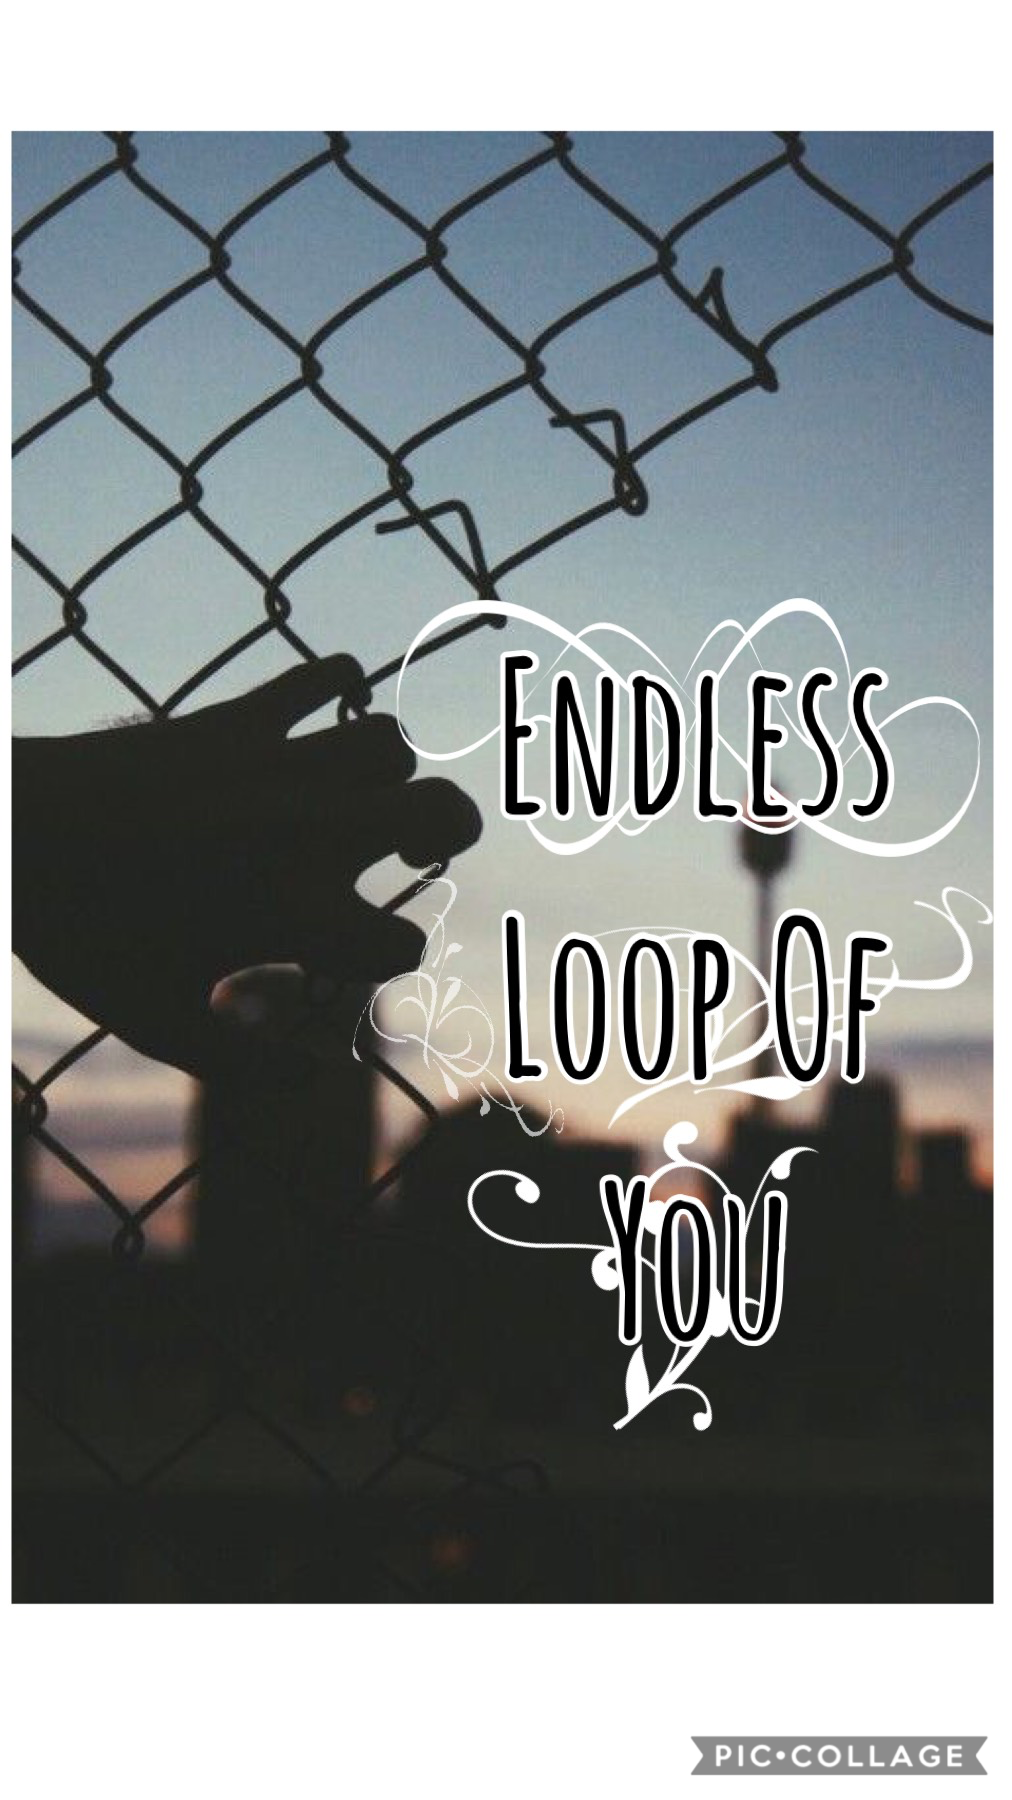 Endless loop of you 